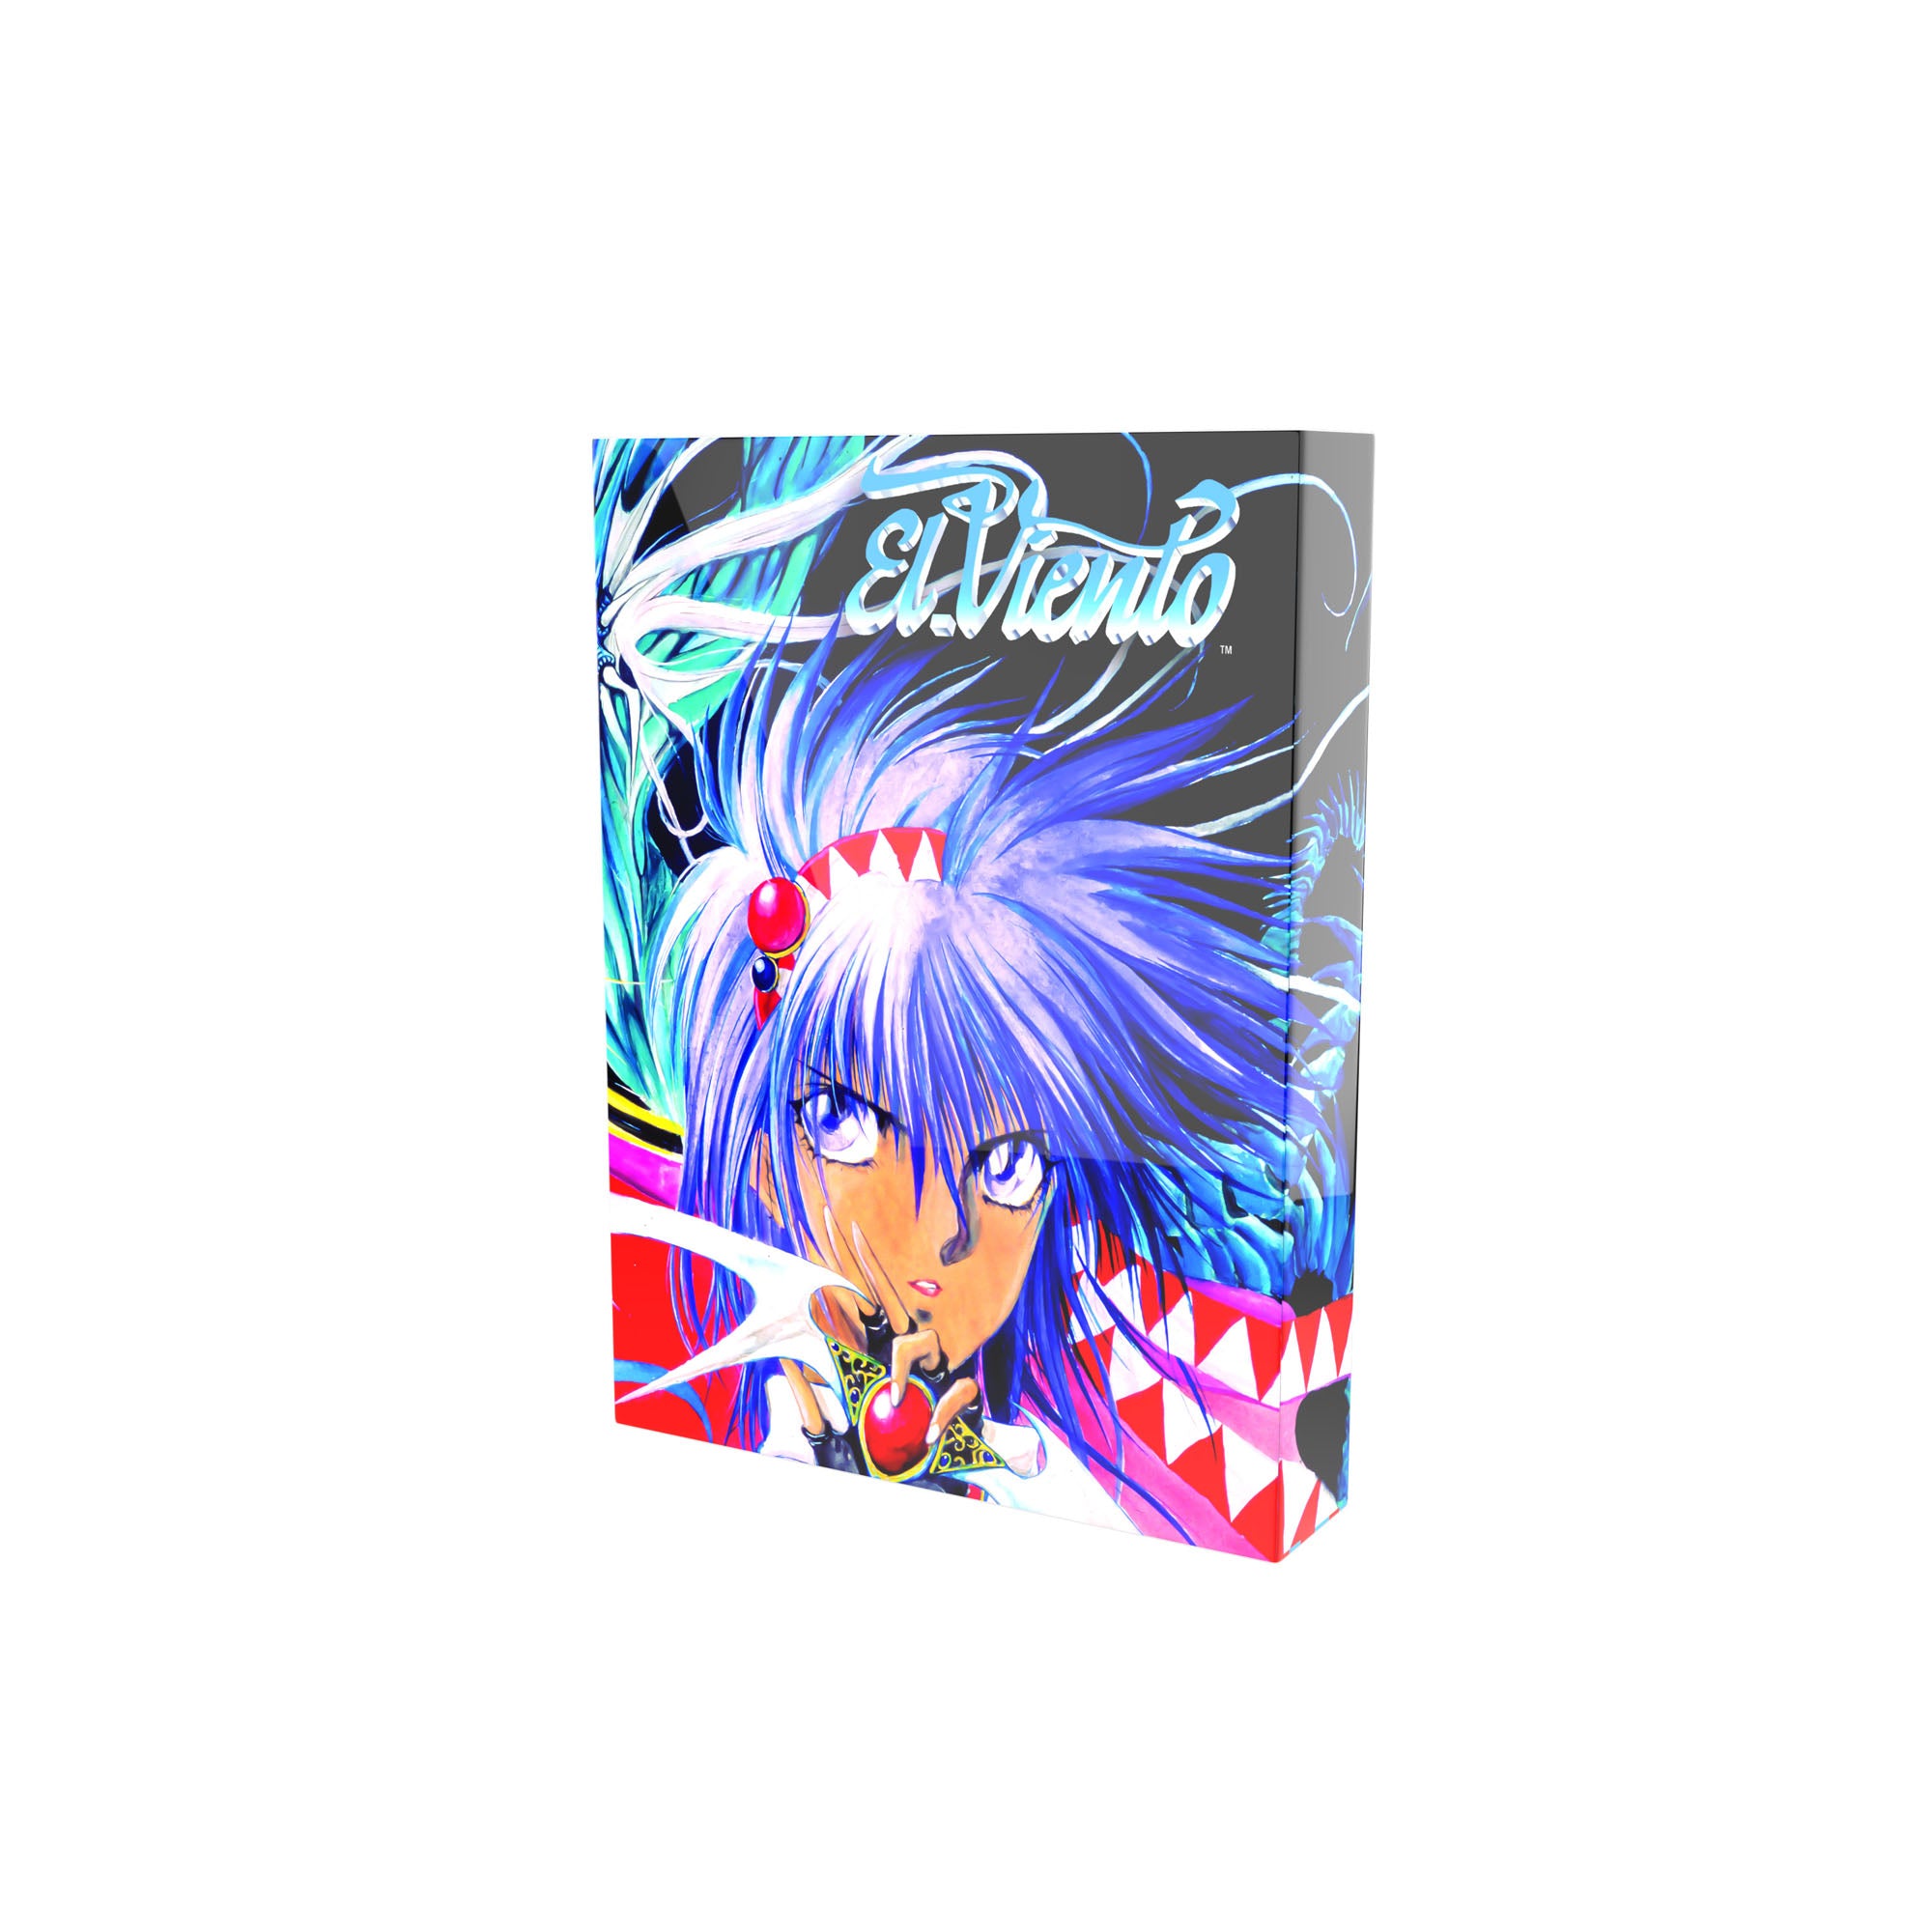 El Viento: Collector’s Edition (SEGA Genesis/Mega Drive)